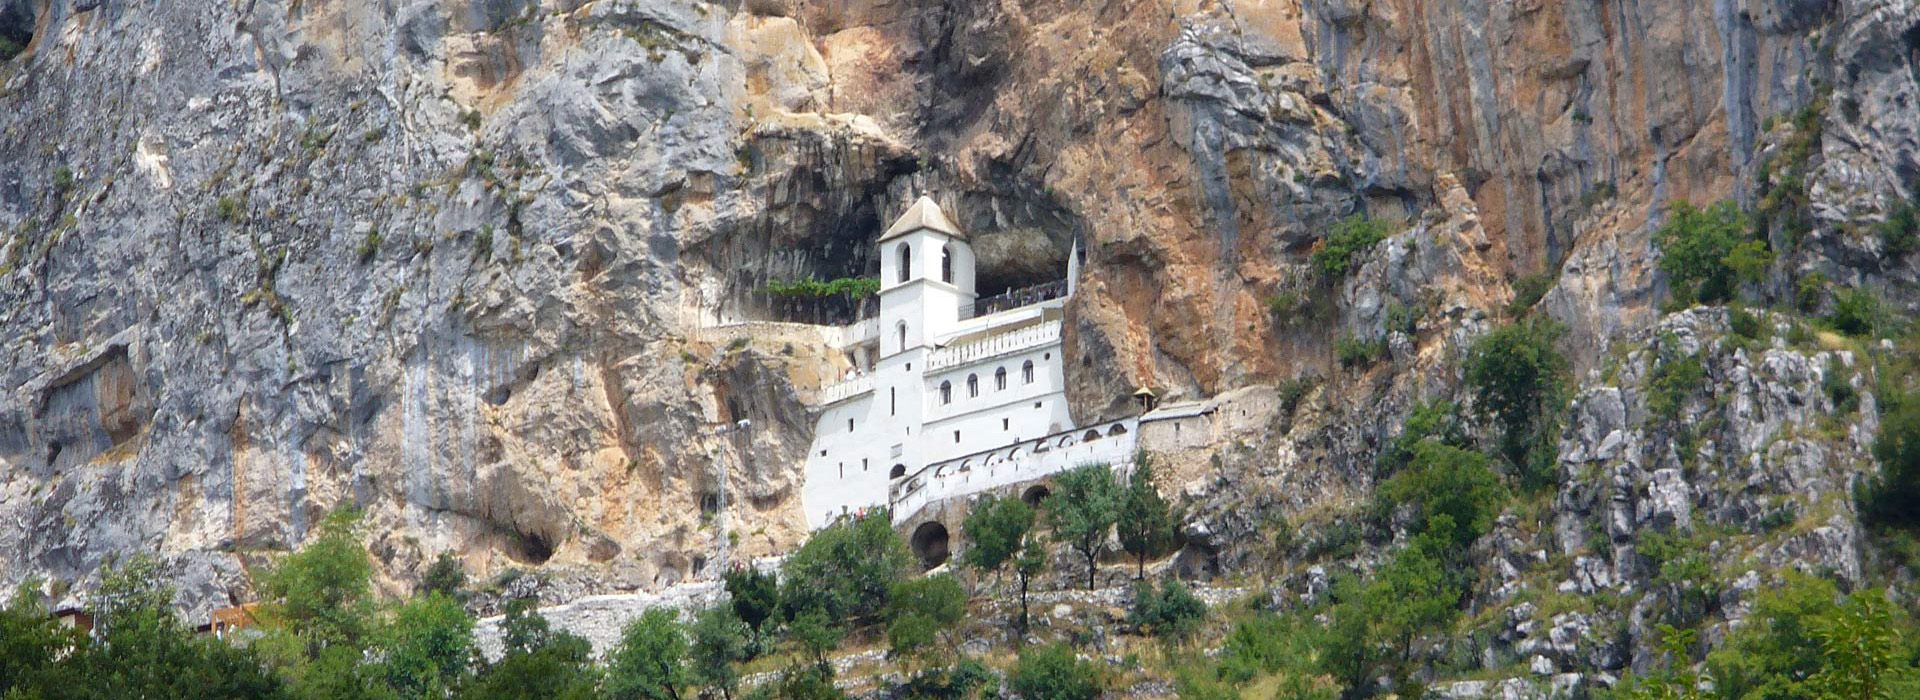 Cycling Balkans guided holiday - Ostrog Monastery